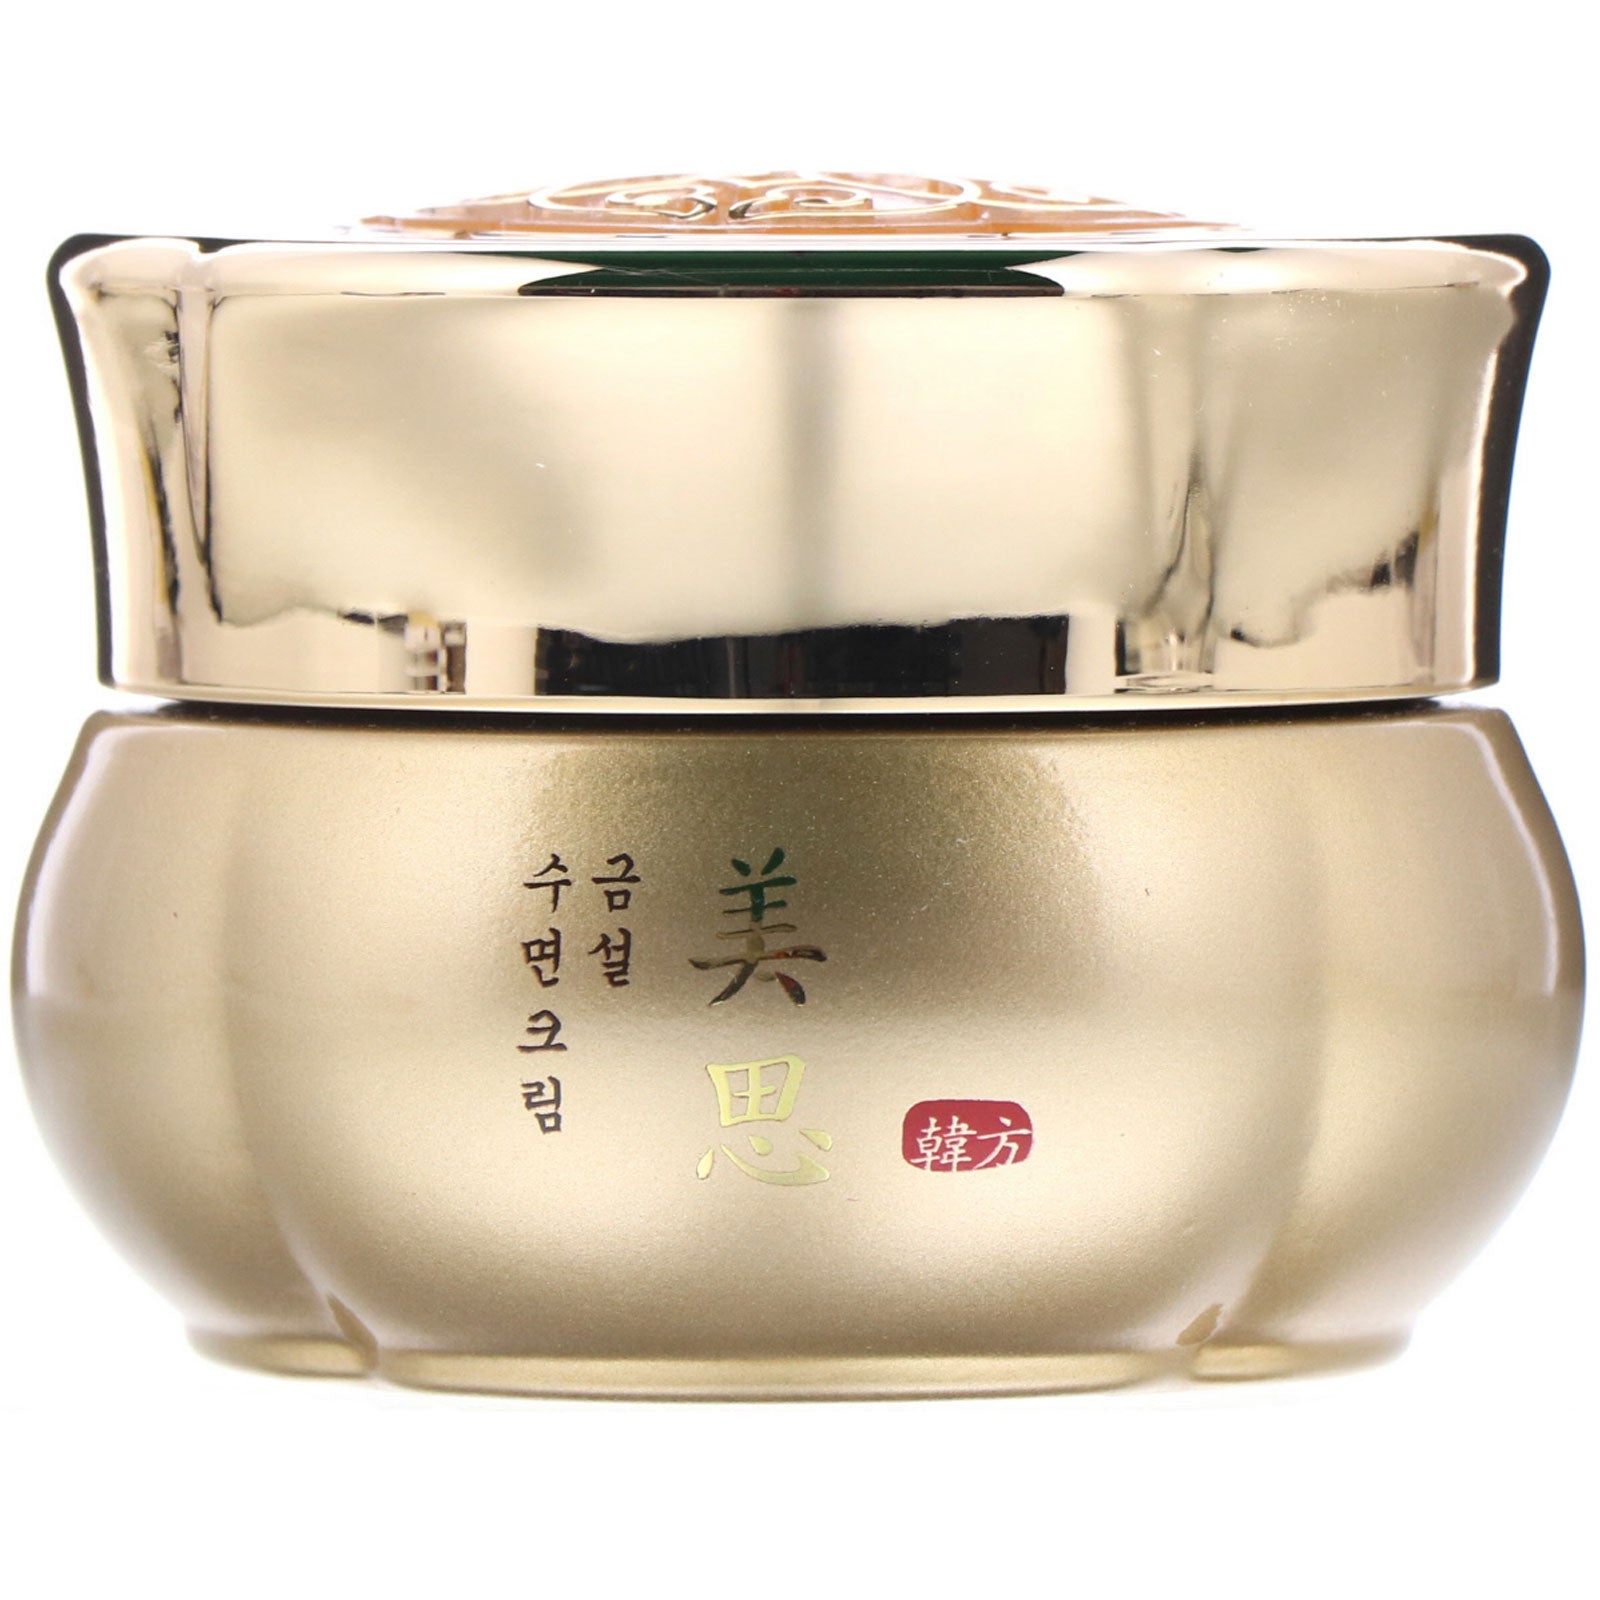 Missha, Geum Sul Overnight Cream, 80 ml